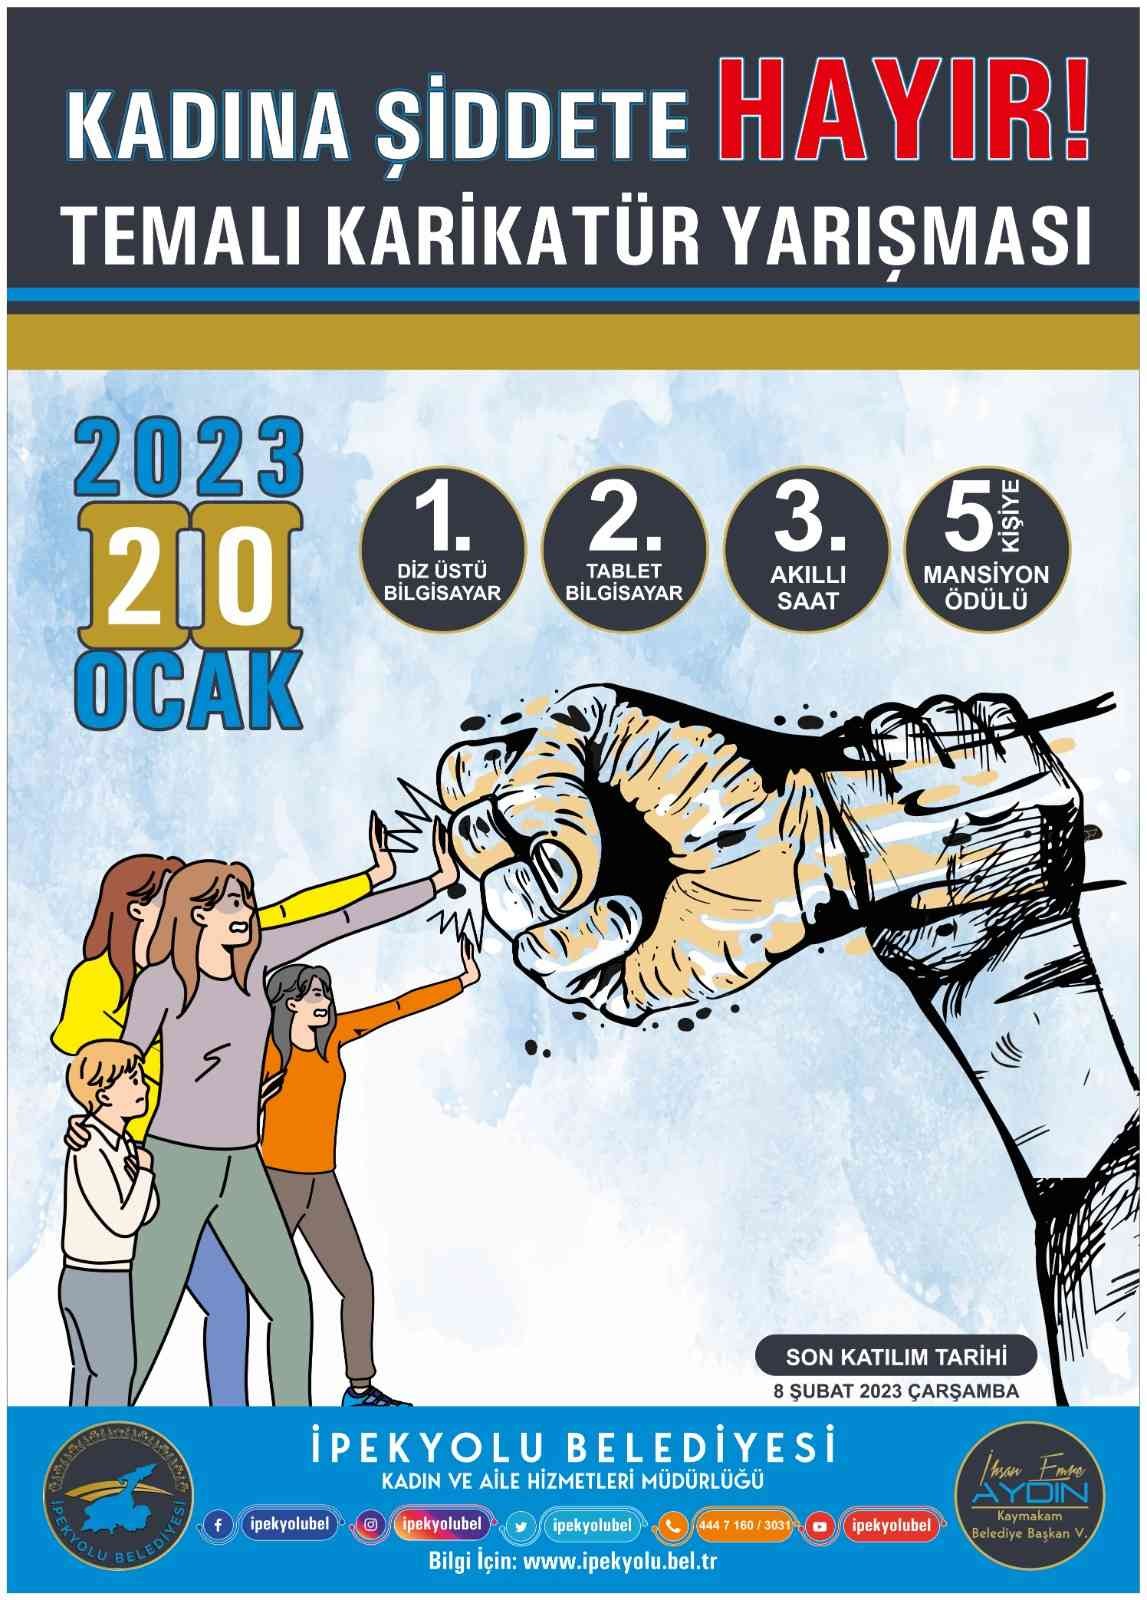 İpekyolu’nda “Kadına Şiddete Kayır” konulu karikatür yarışması